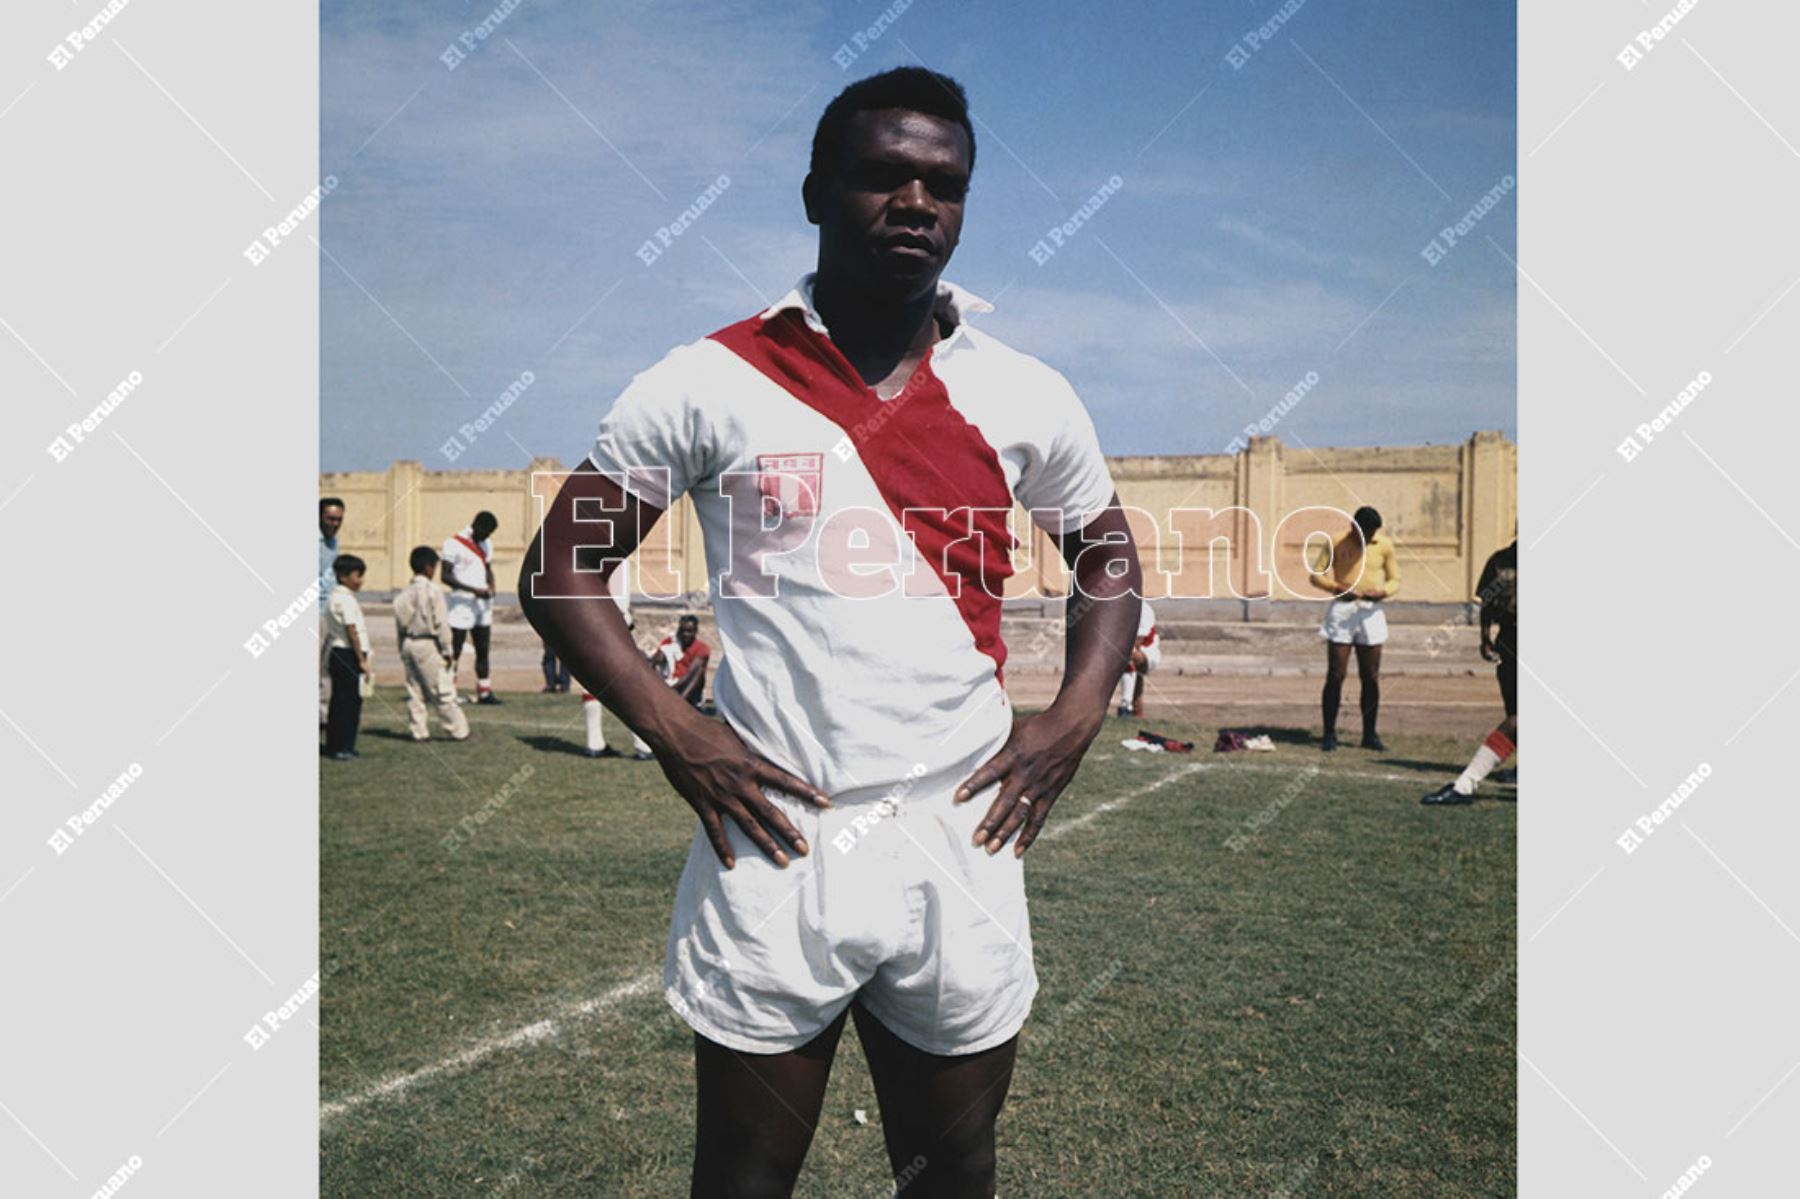 Lima - 1970 / Pedro Pablo "Perico" León delantero de la selección peruana de fútbol que se prepara para el mundial de México 70.  
Foto: Archivo Histórico de El Peruano